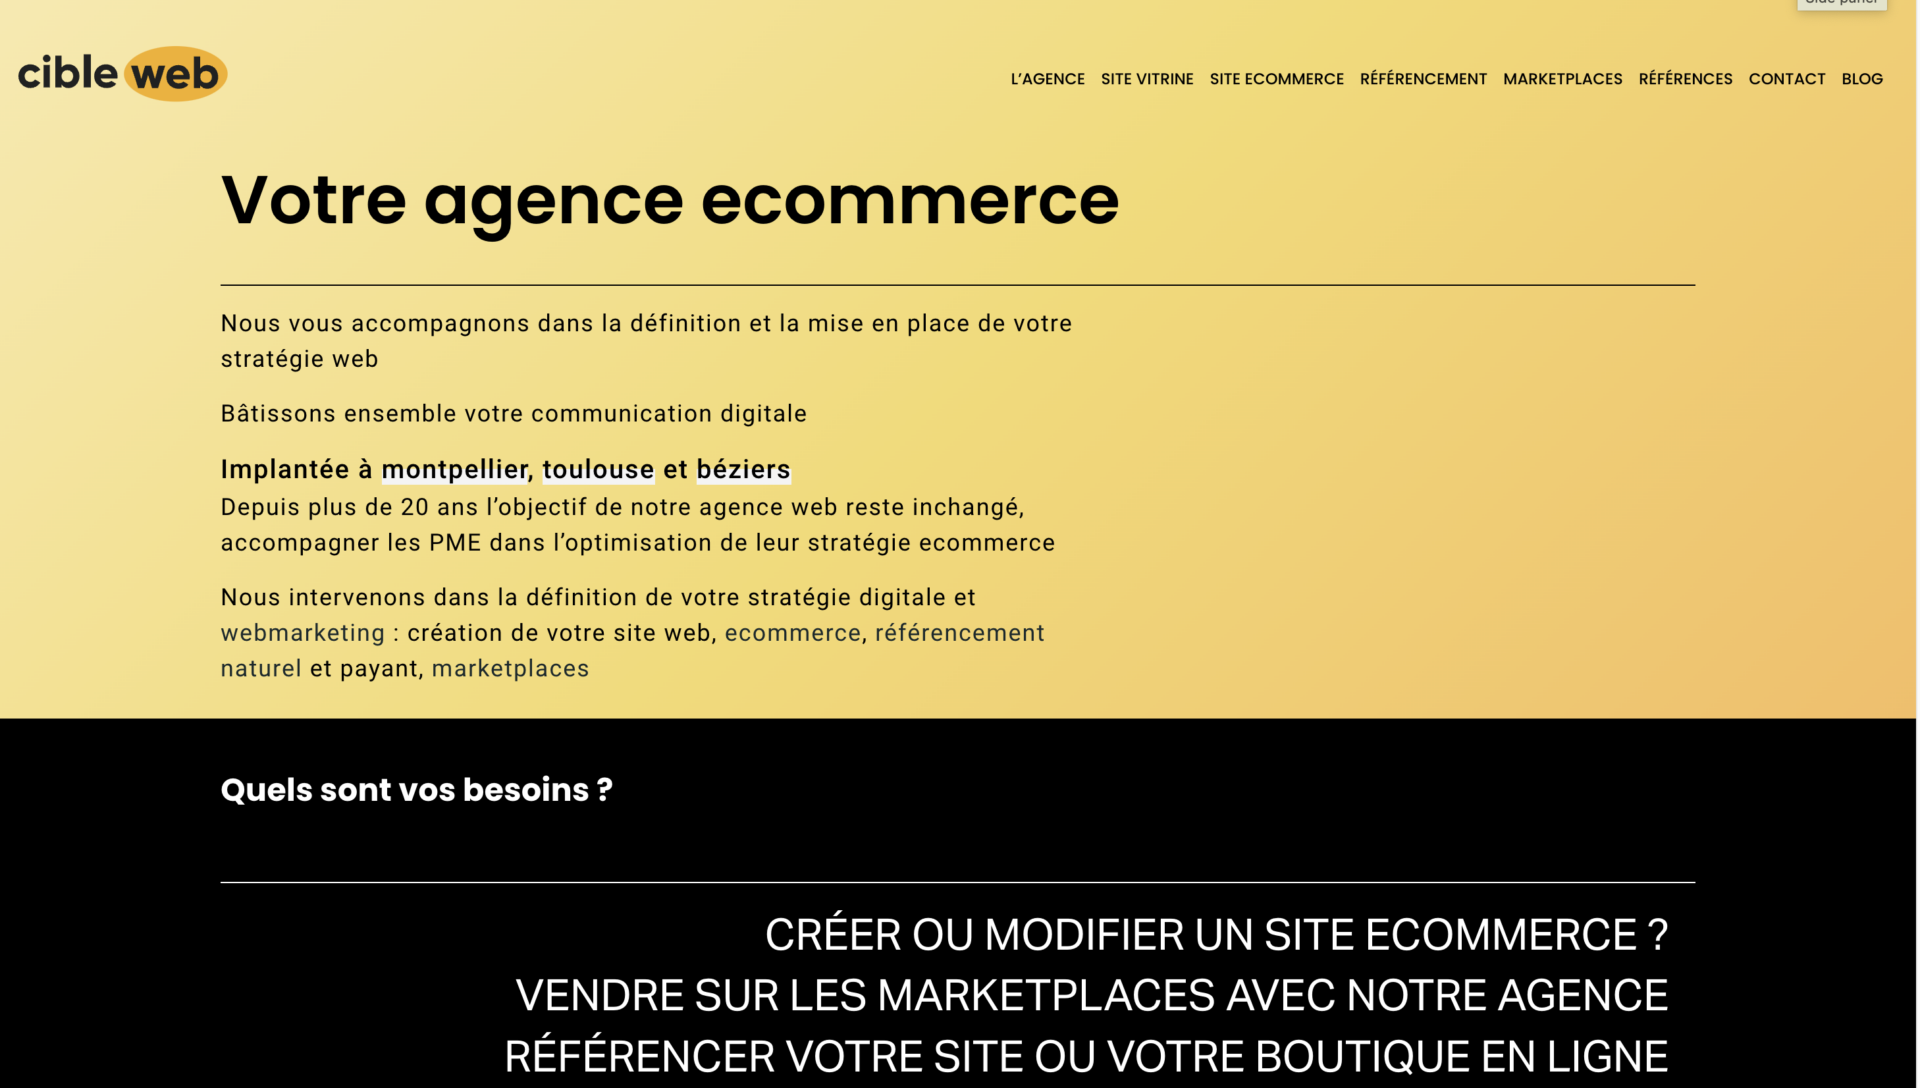 Cible web ecommerce